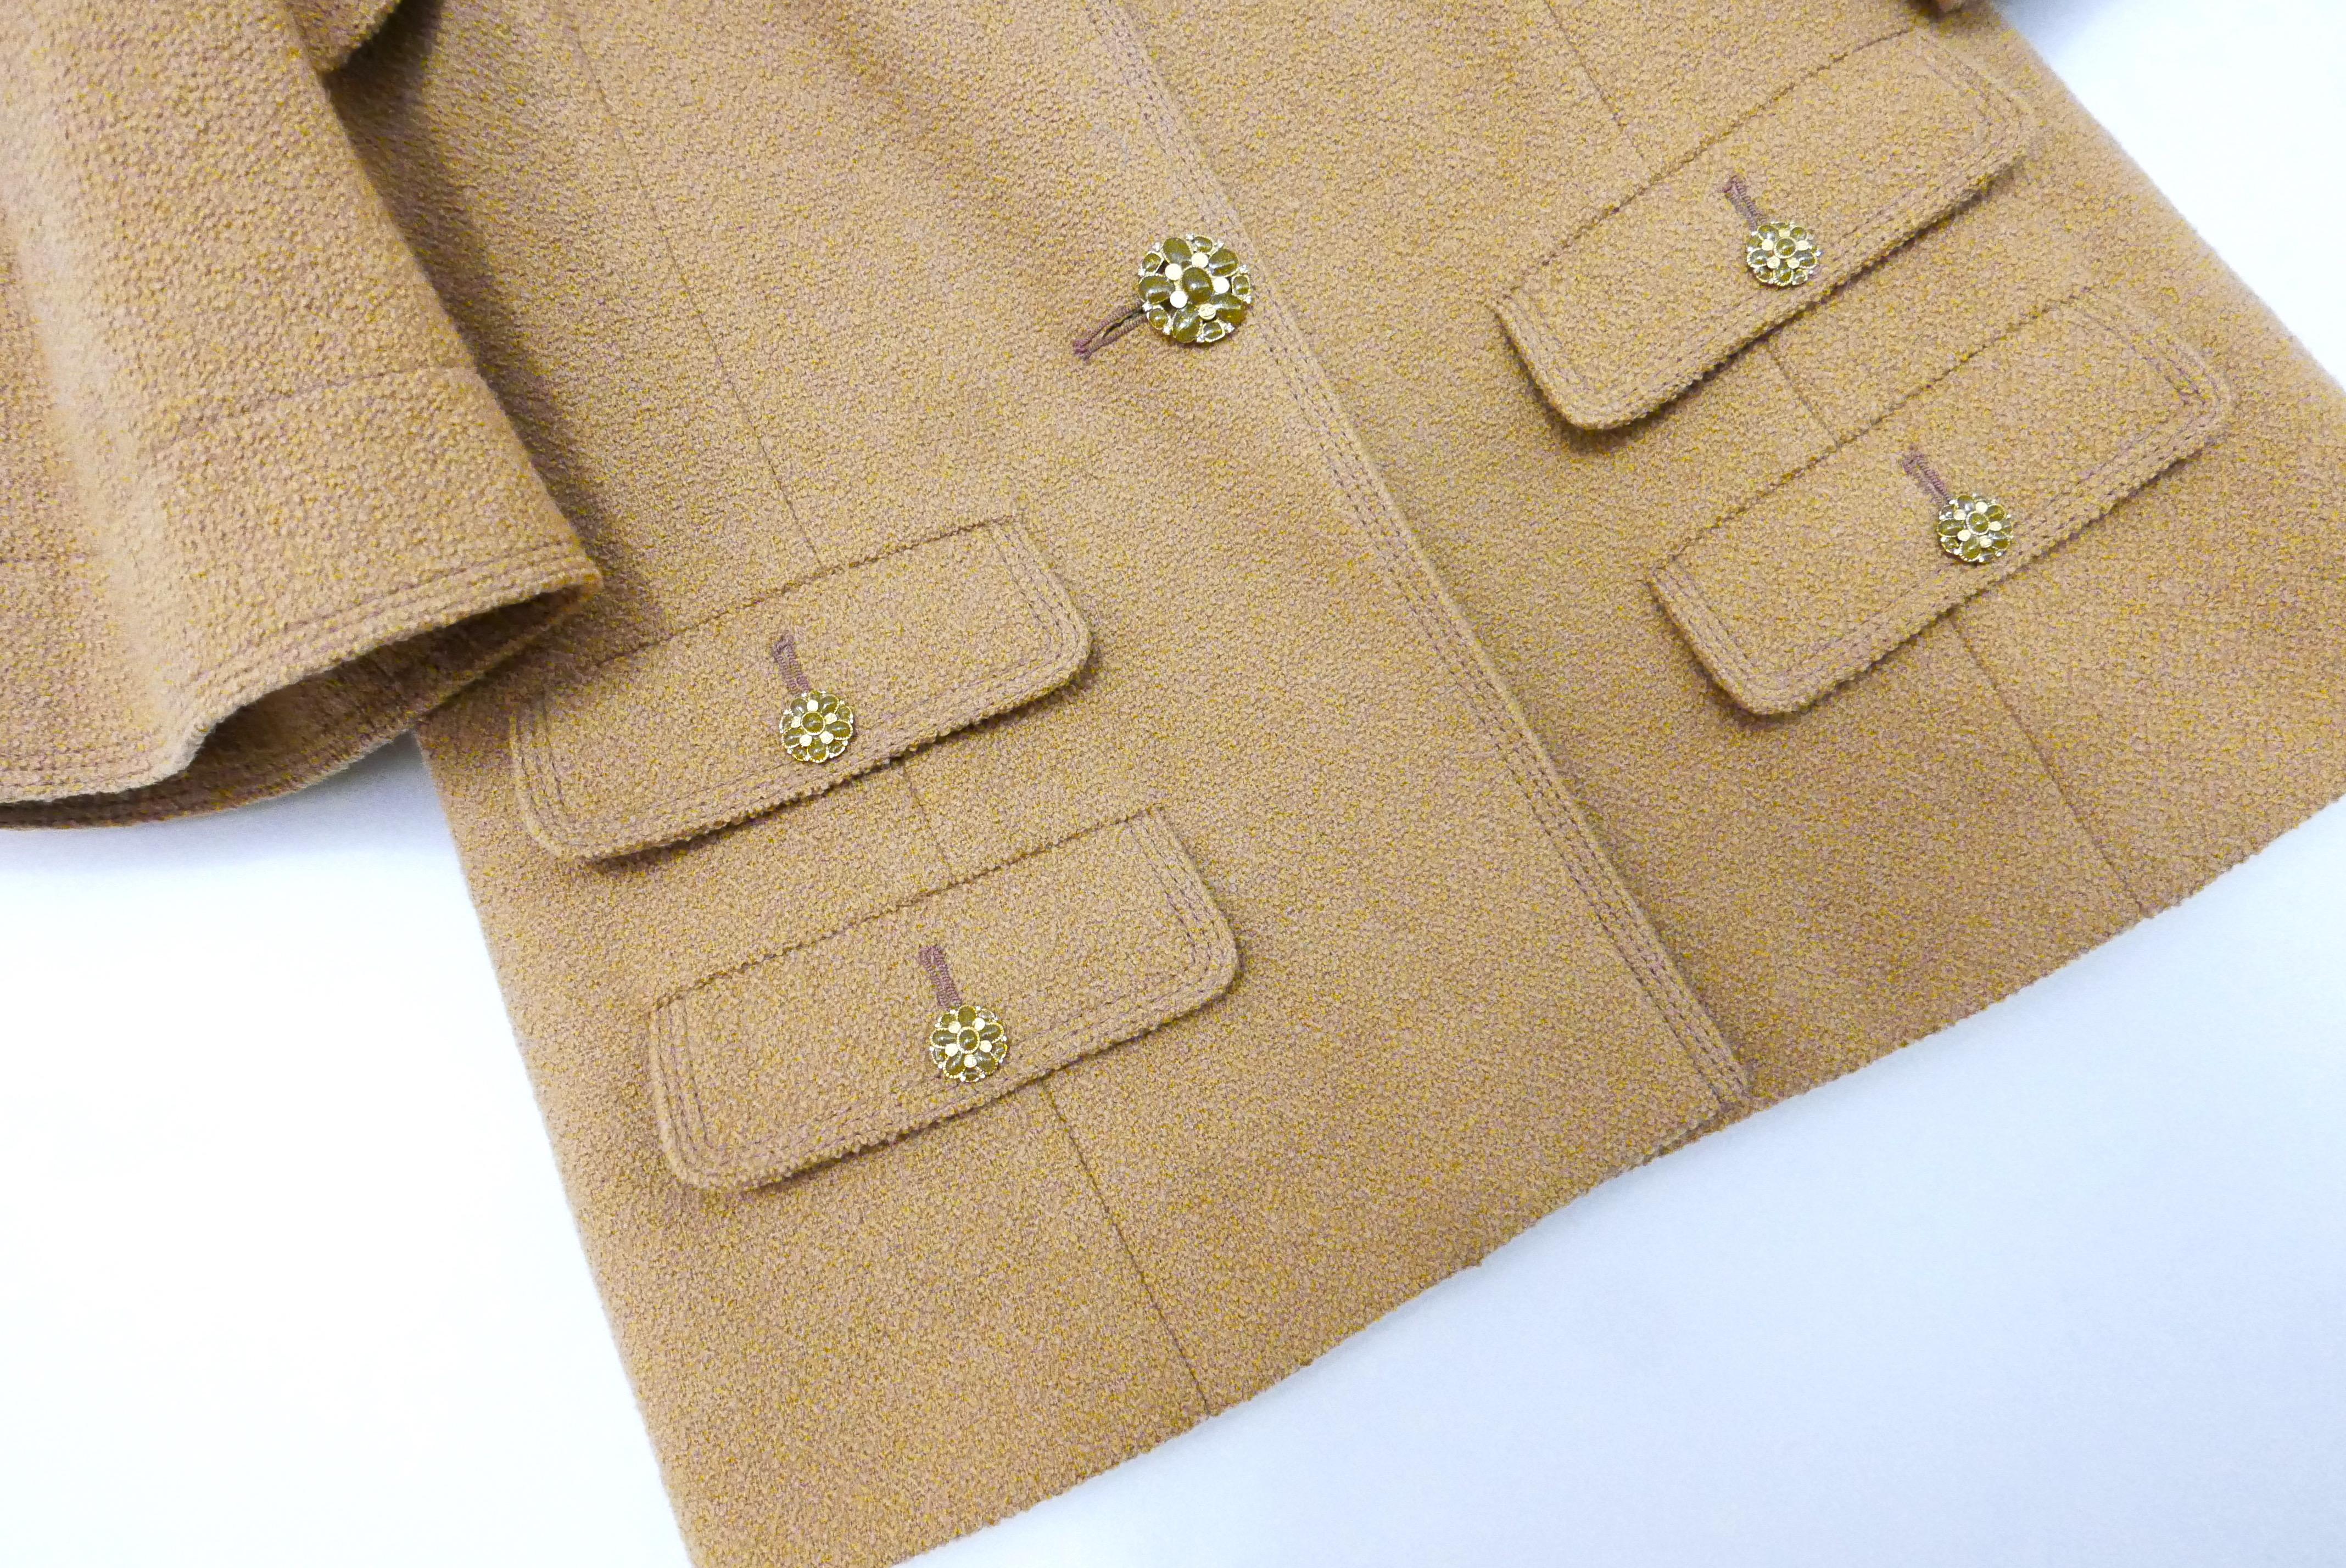 Atemberaubende Chanel Jacke aus der Resort 2015 Kollektion. Einmal getragen und dann sorgfältig aufbewahrt.

Gefertigt aus kamelfarbener Wolle mit Bouclé-Struktur und atemberaubenden Gripoix-Glasknöpfen. Es hat 4 Vordertaschen, weite Ärmel und einen